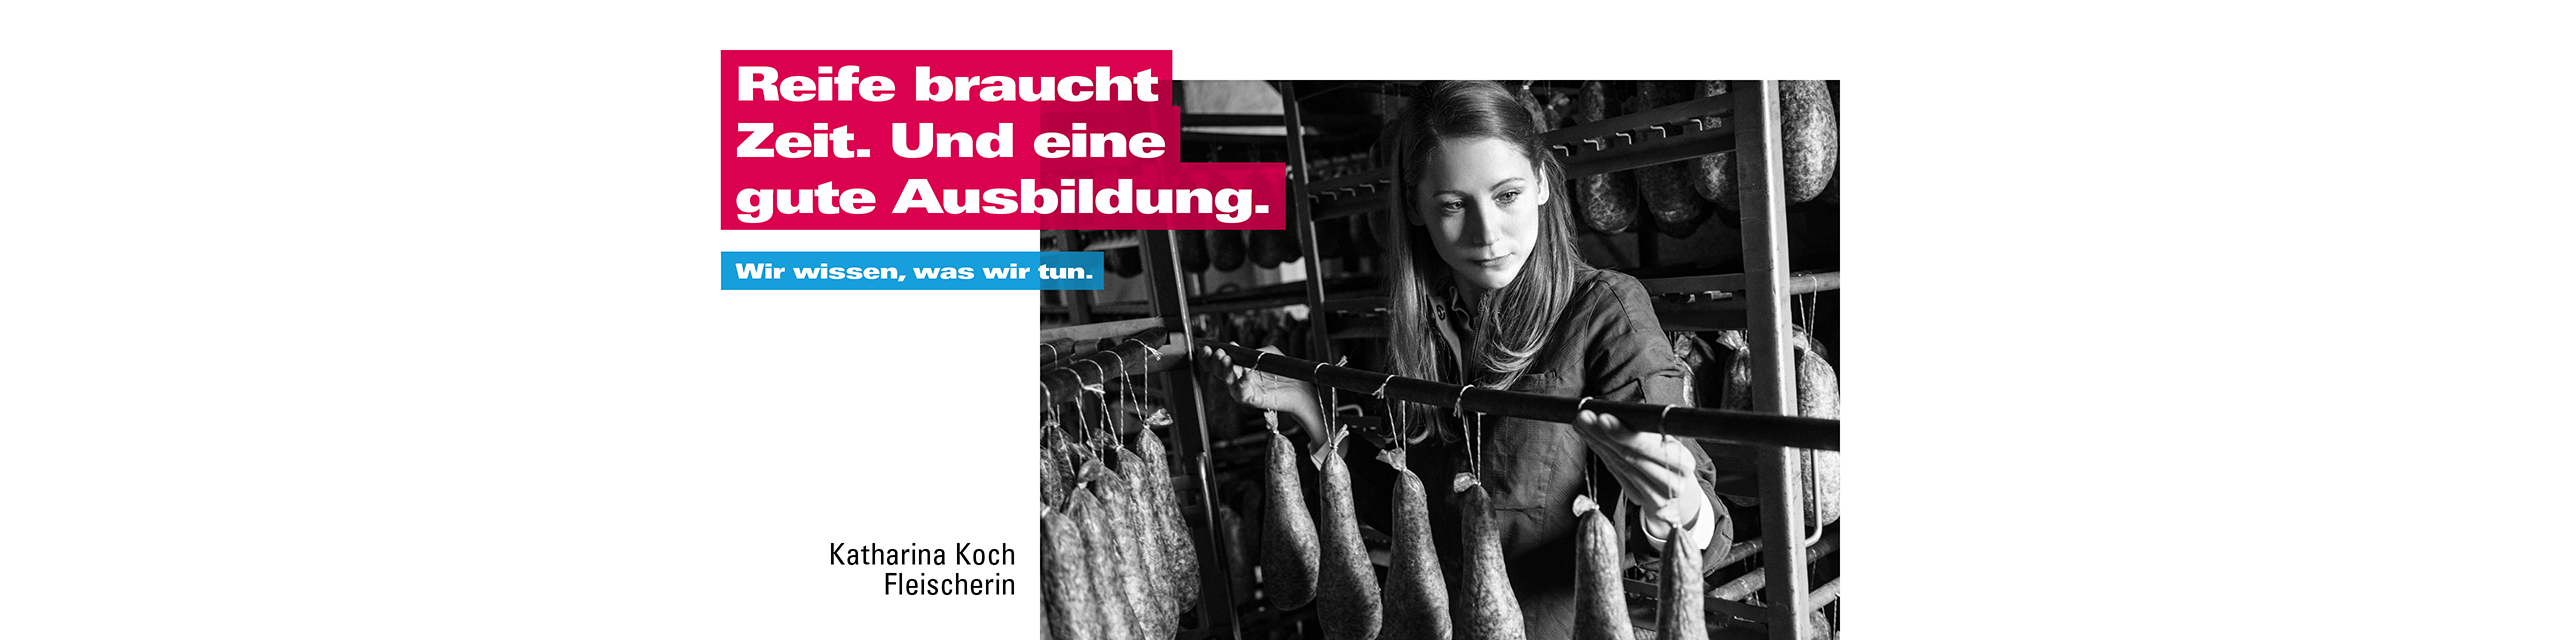 Kampagnenplakat mit der Botschafterin Katharina Koch hängt Wurst auf. 